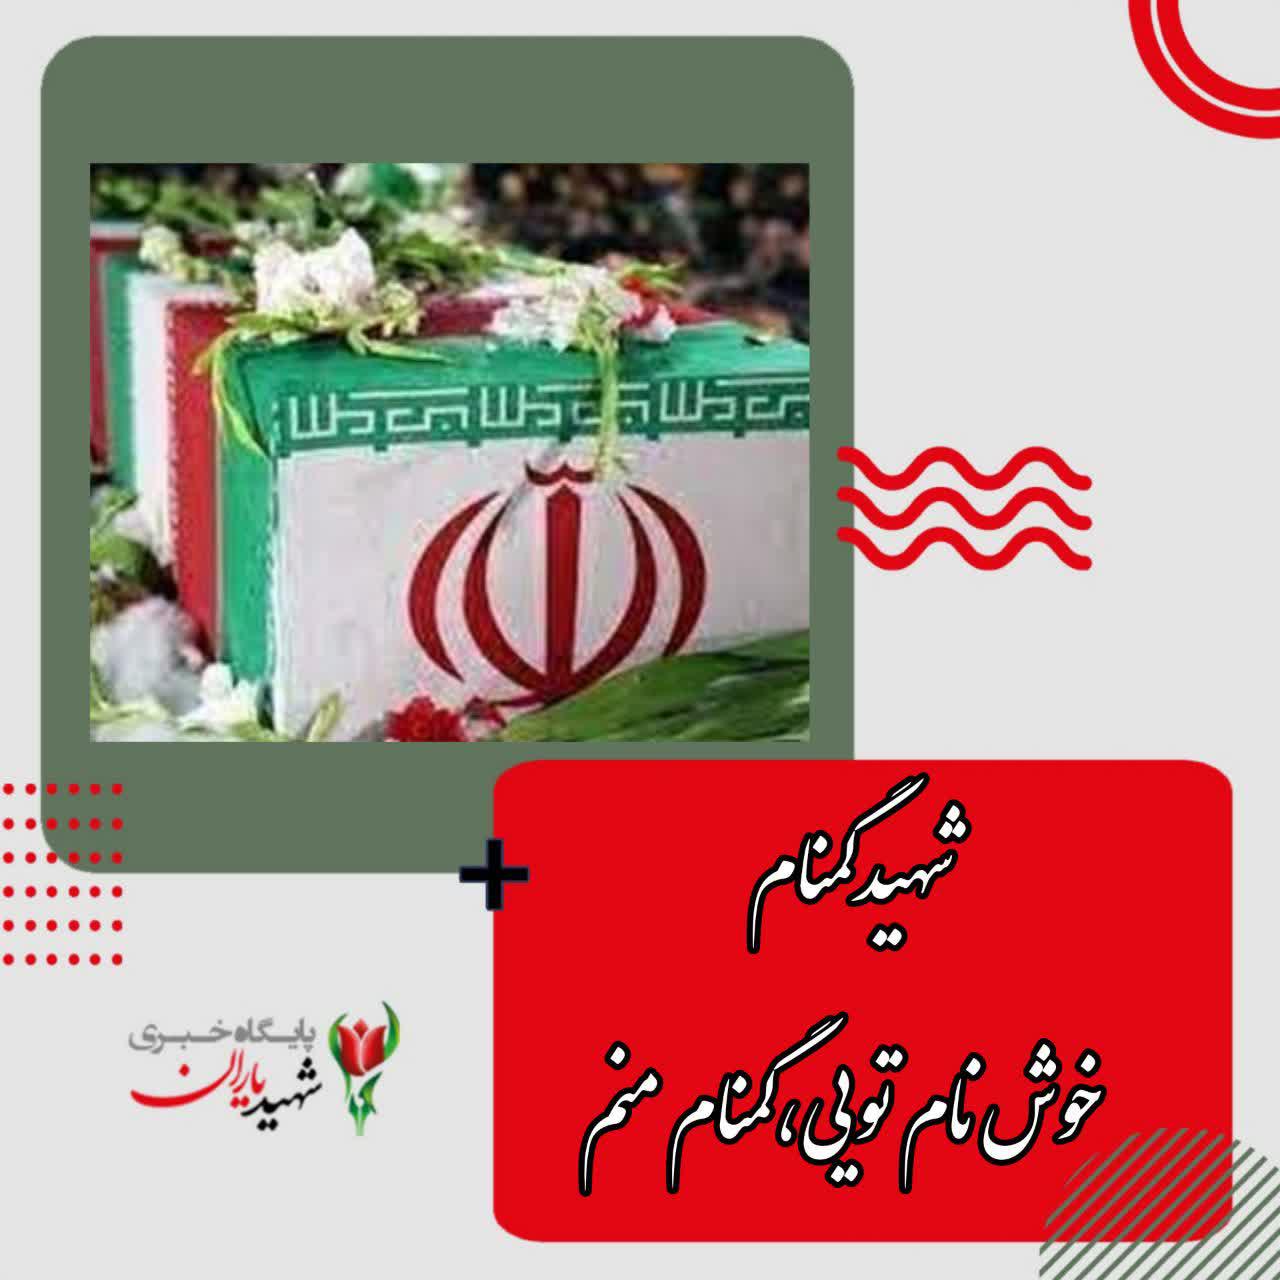 تشیع پیکر مطهر شهید گمنام در خوزستان